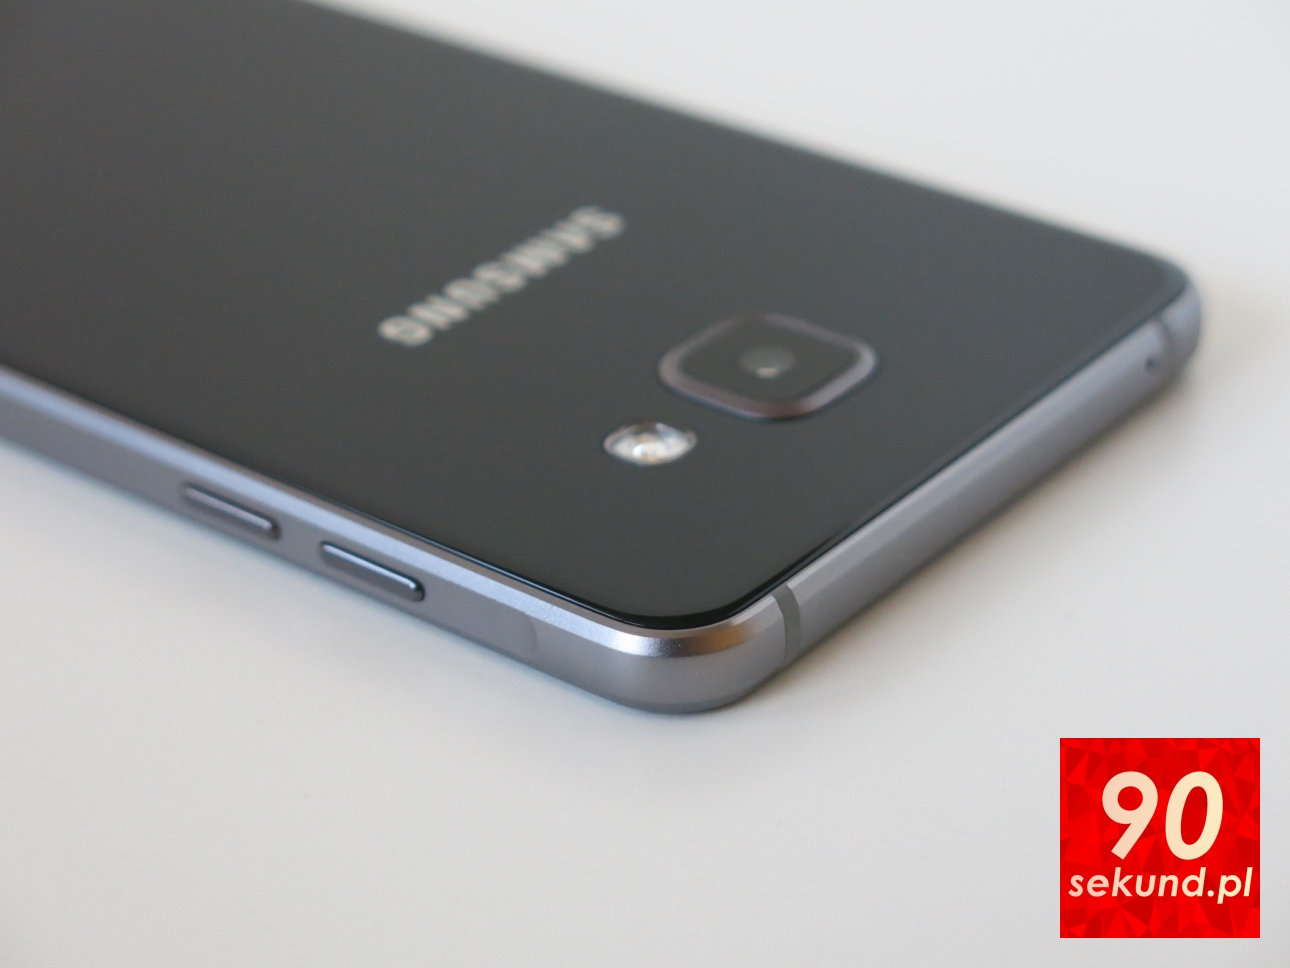 Samsung Galaxy A5 2016 (SM-A510F) - 90sekund.pl